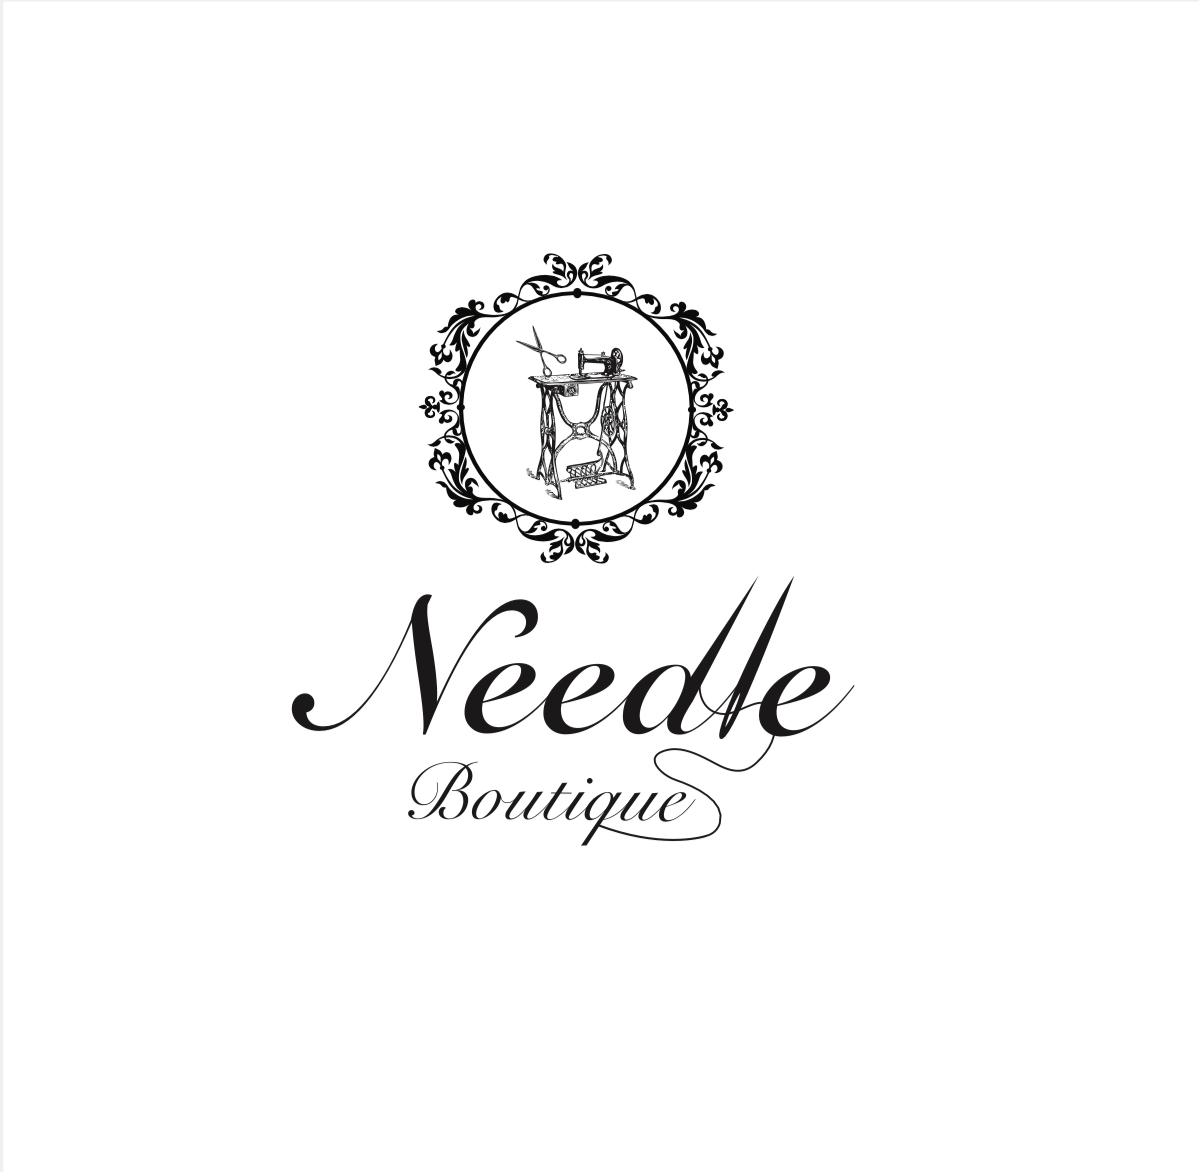 Needle boutique